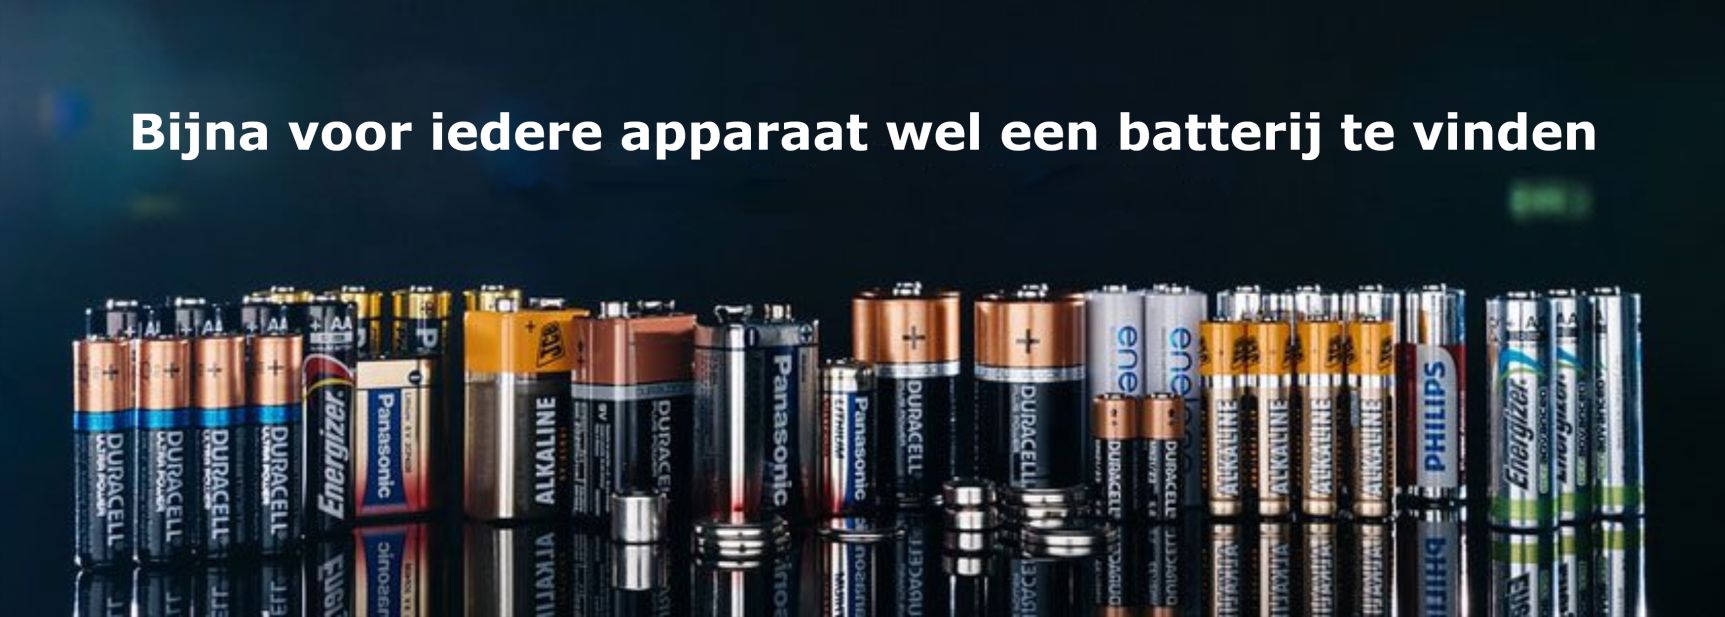 Batteries_NL.jpg